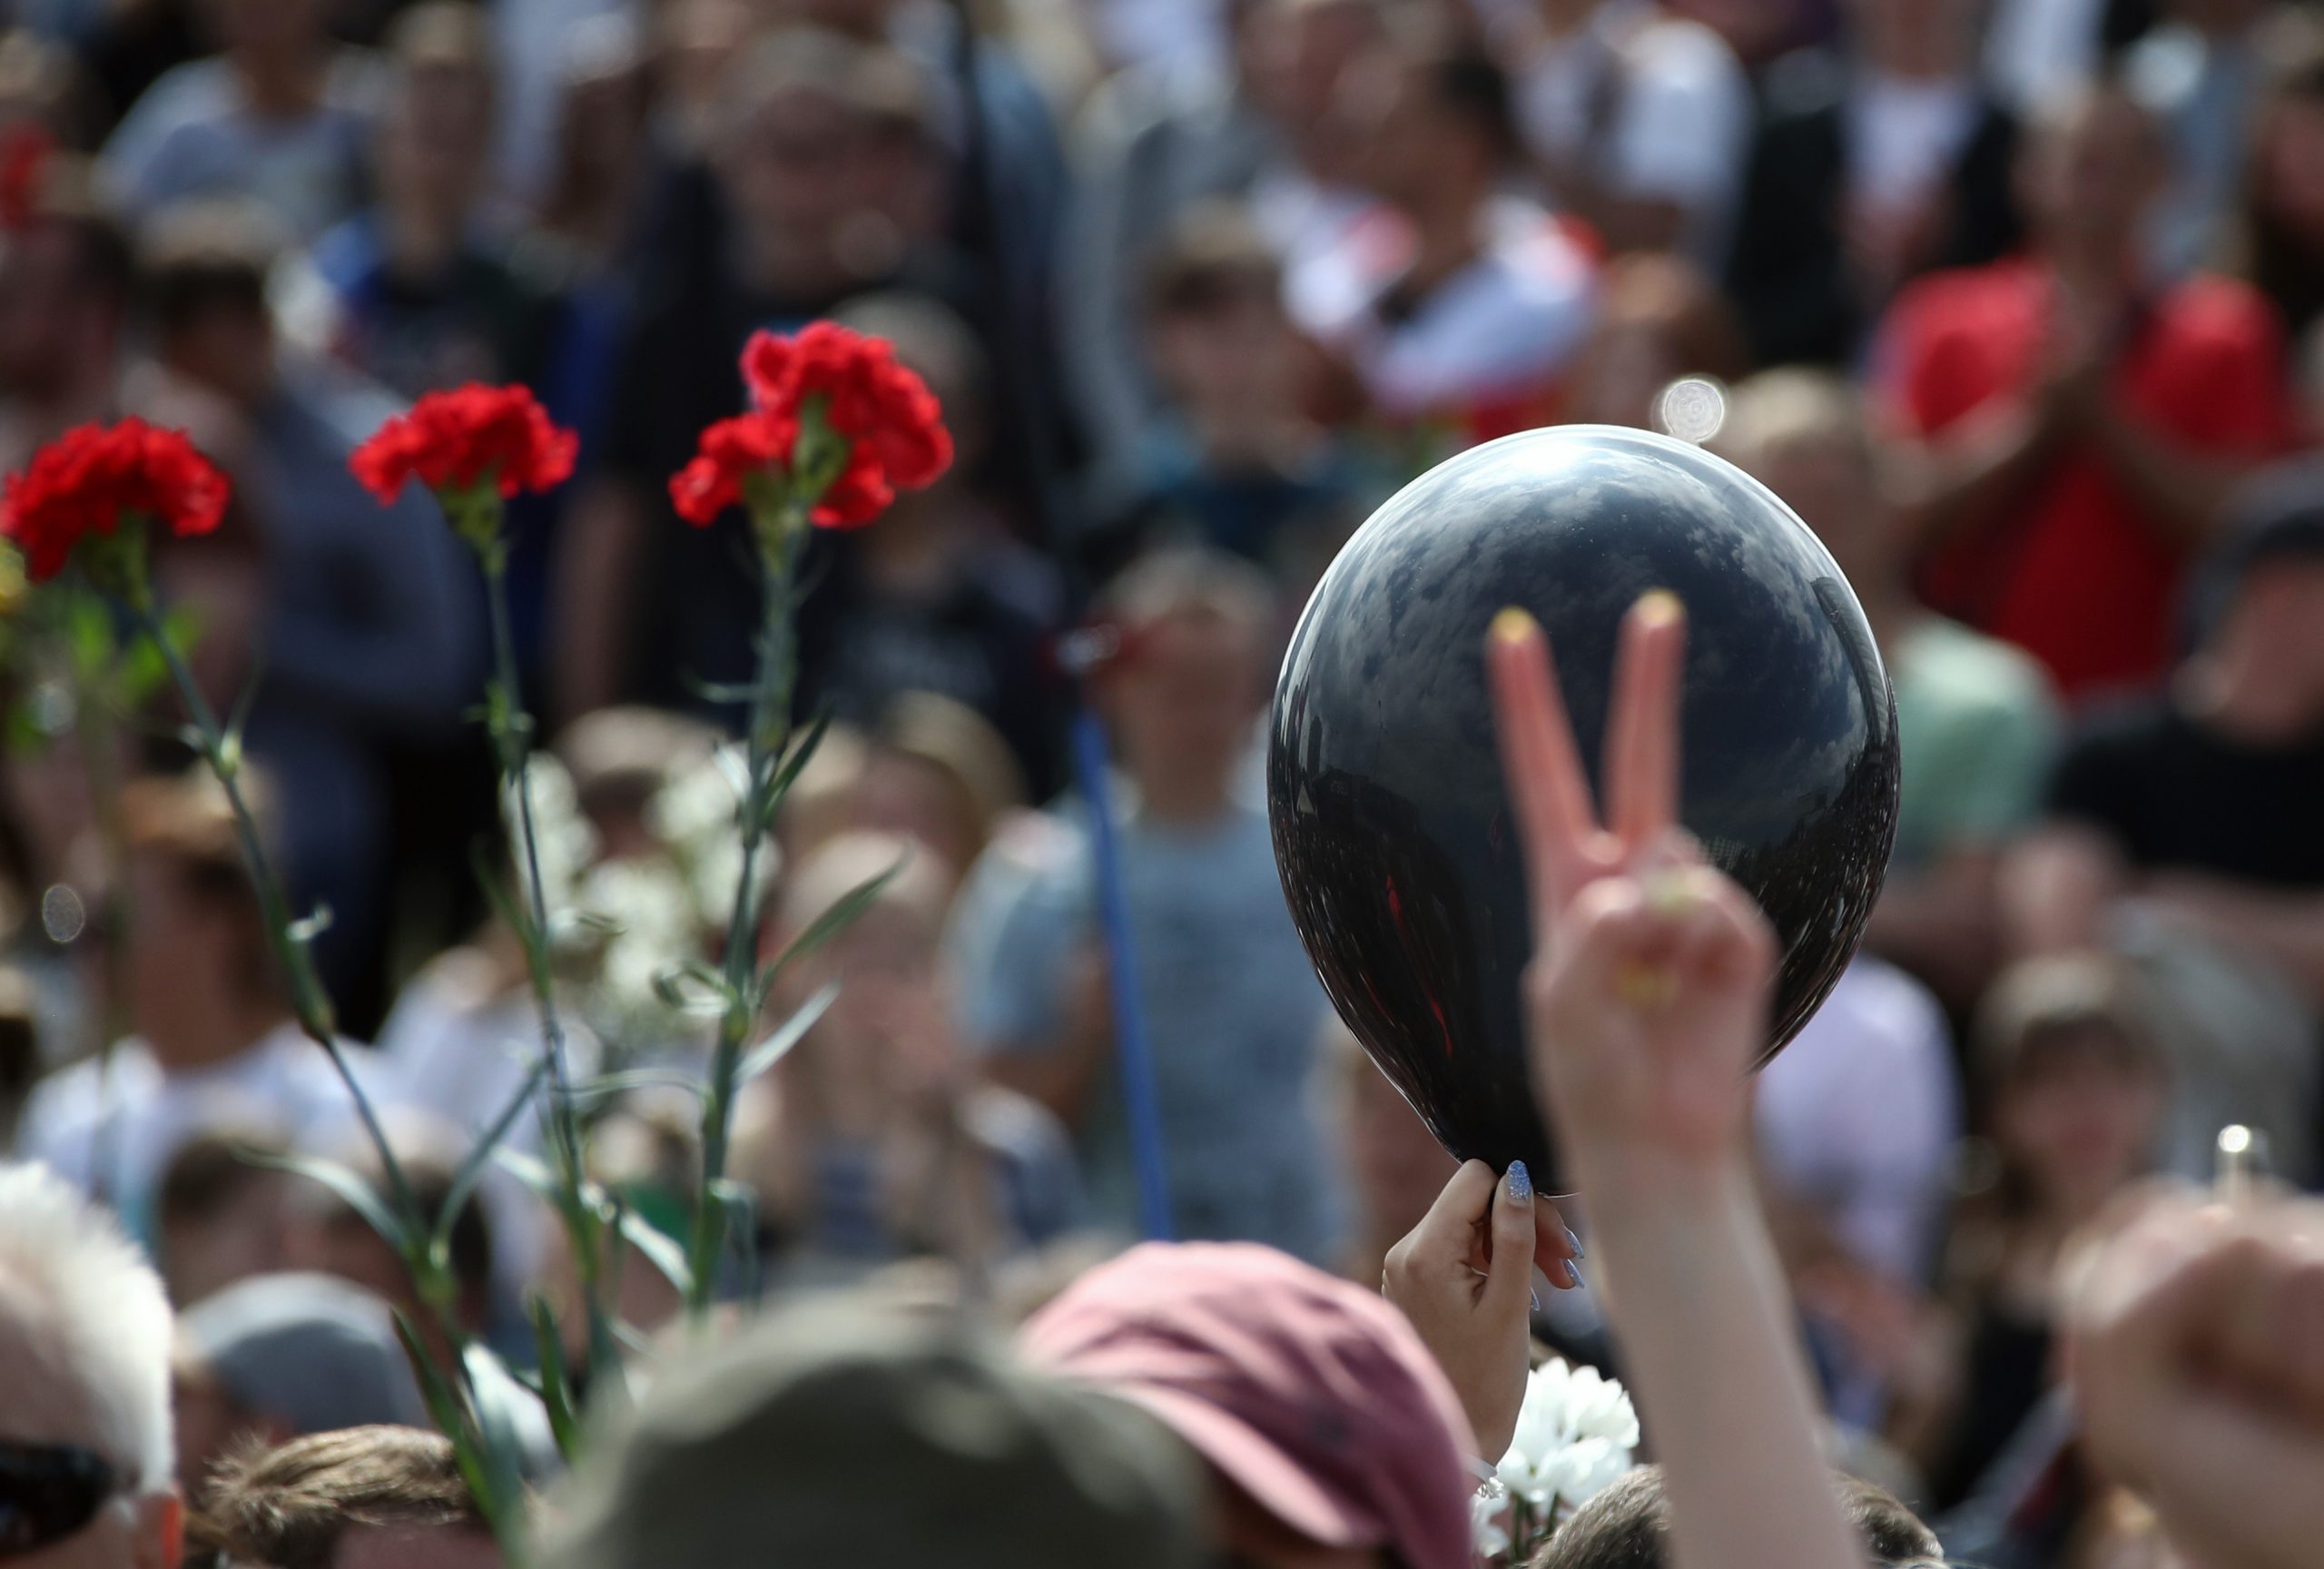 В связи с трагедией некоторые поменяли белые и красные шарики на черные. Фото Valery Sharifulin/TASS/Scanpix/Leta